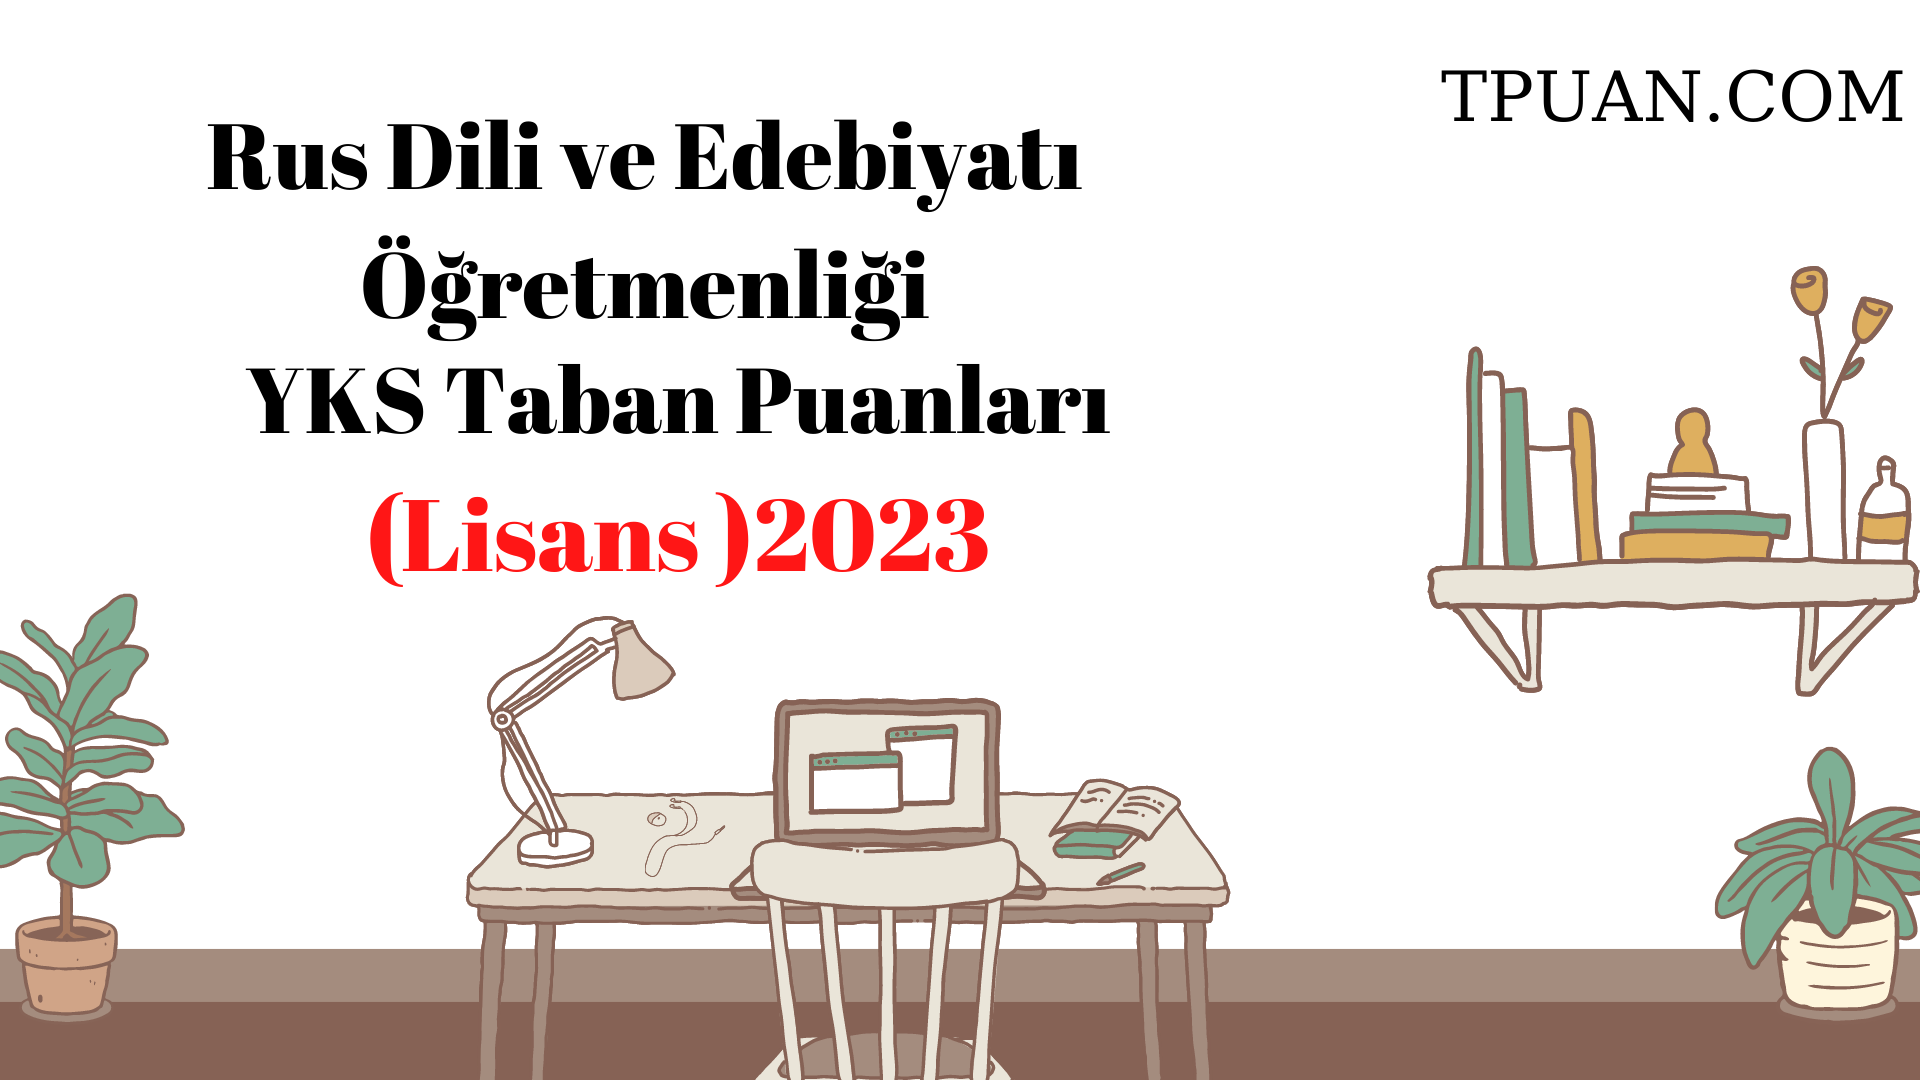  Rus Dili ve Edebiyatı Öğretmenliği Bölümü YKS Taban Puanları (4 Yıllık) 2023